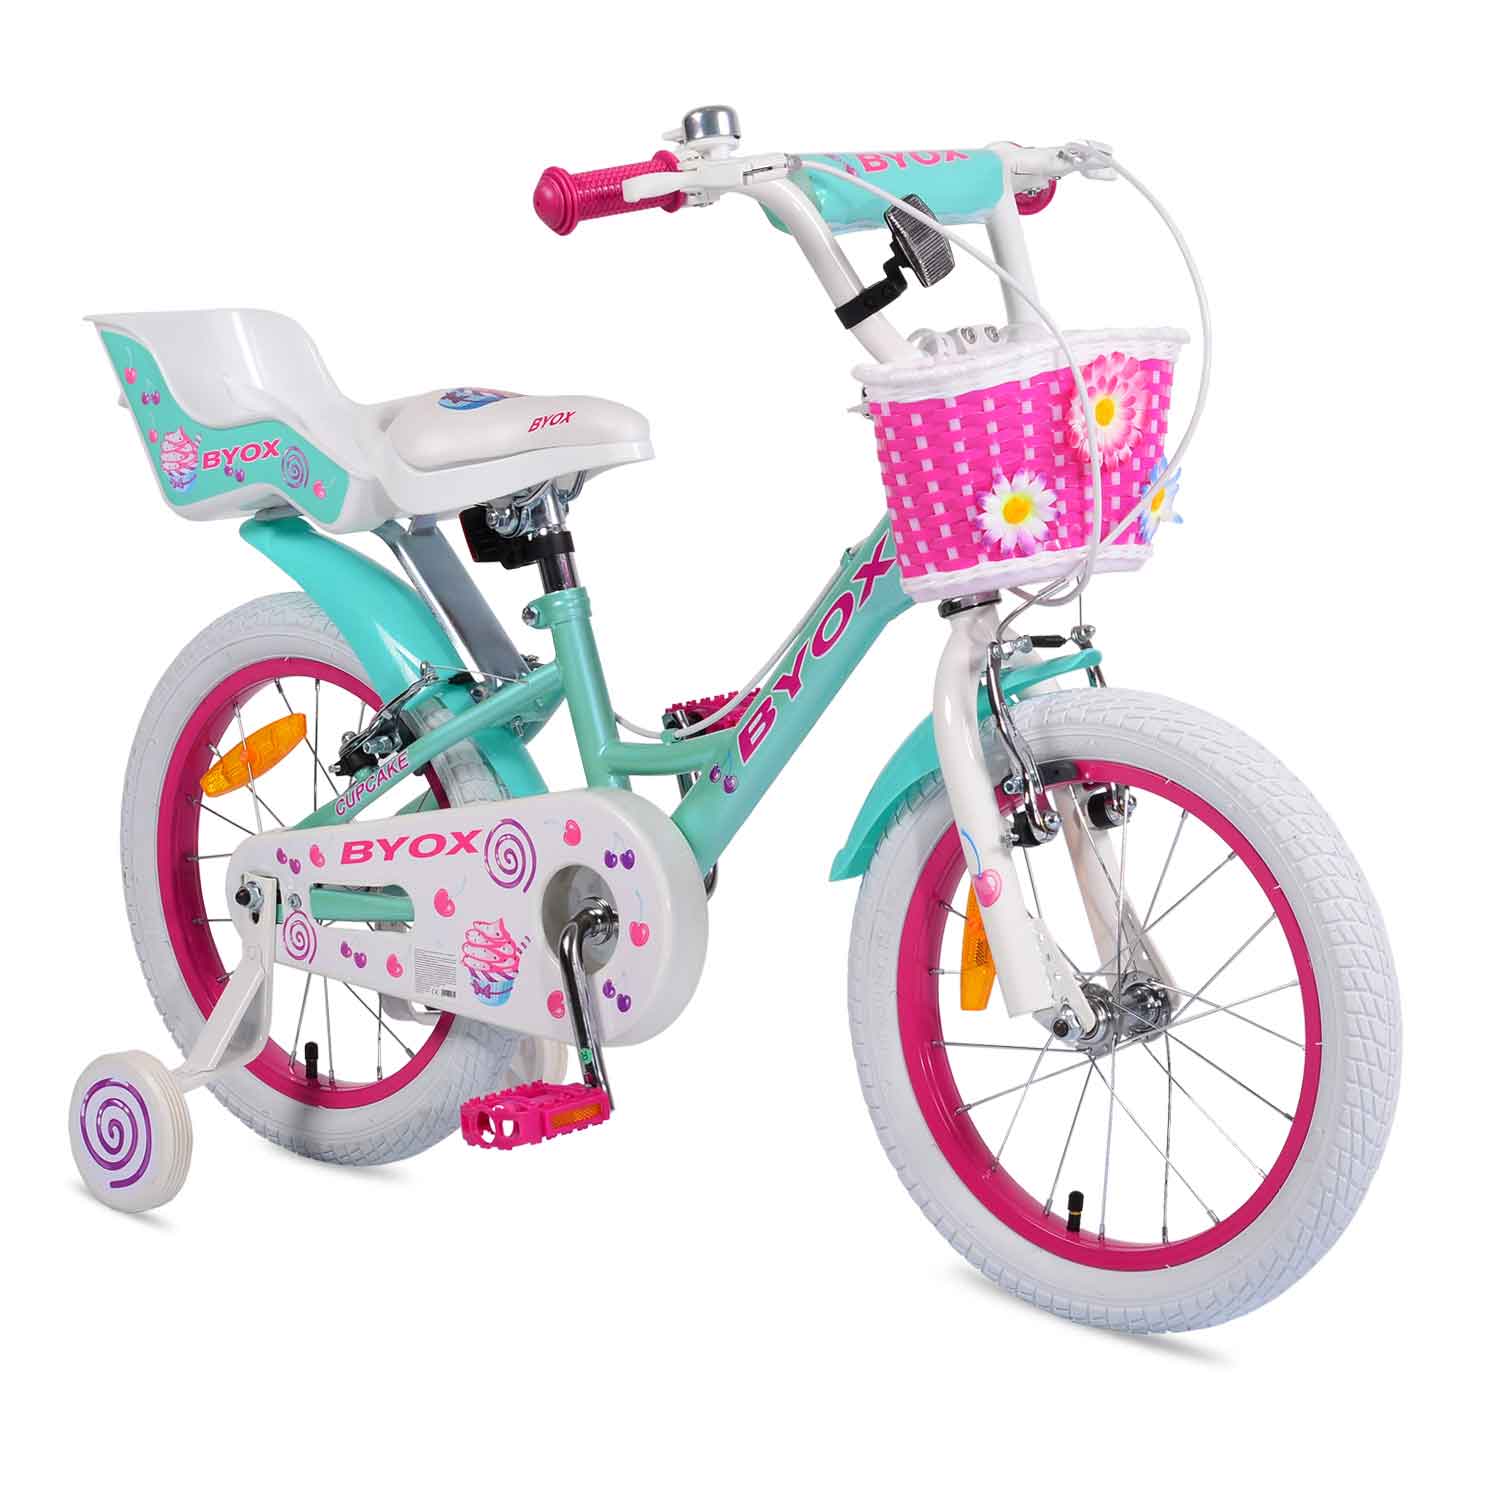 Παιδικό Ποδήλατο 16″ Cucake Byox 